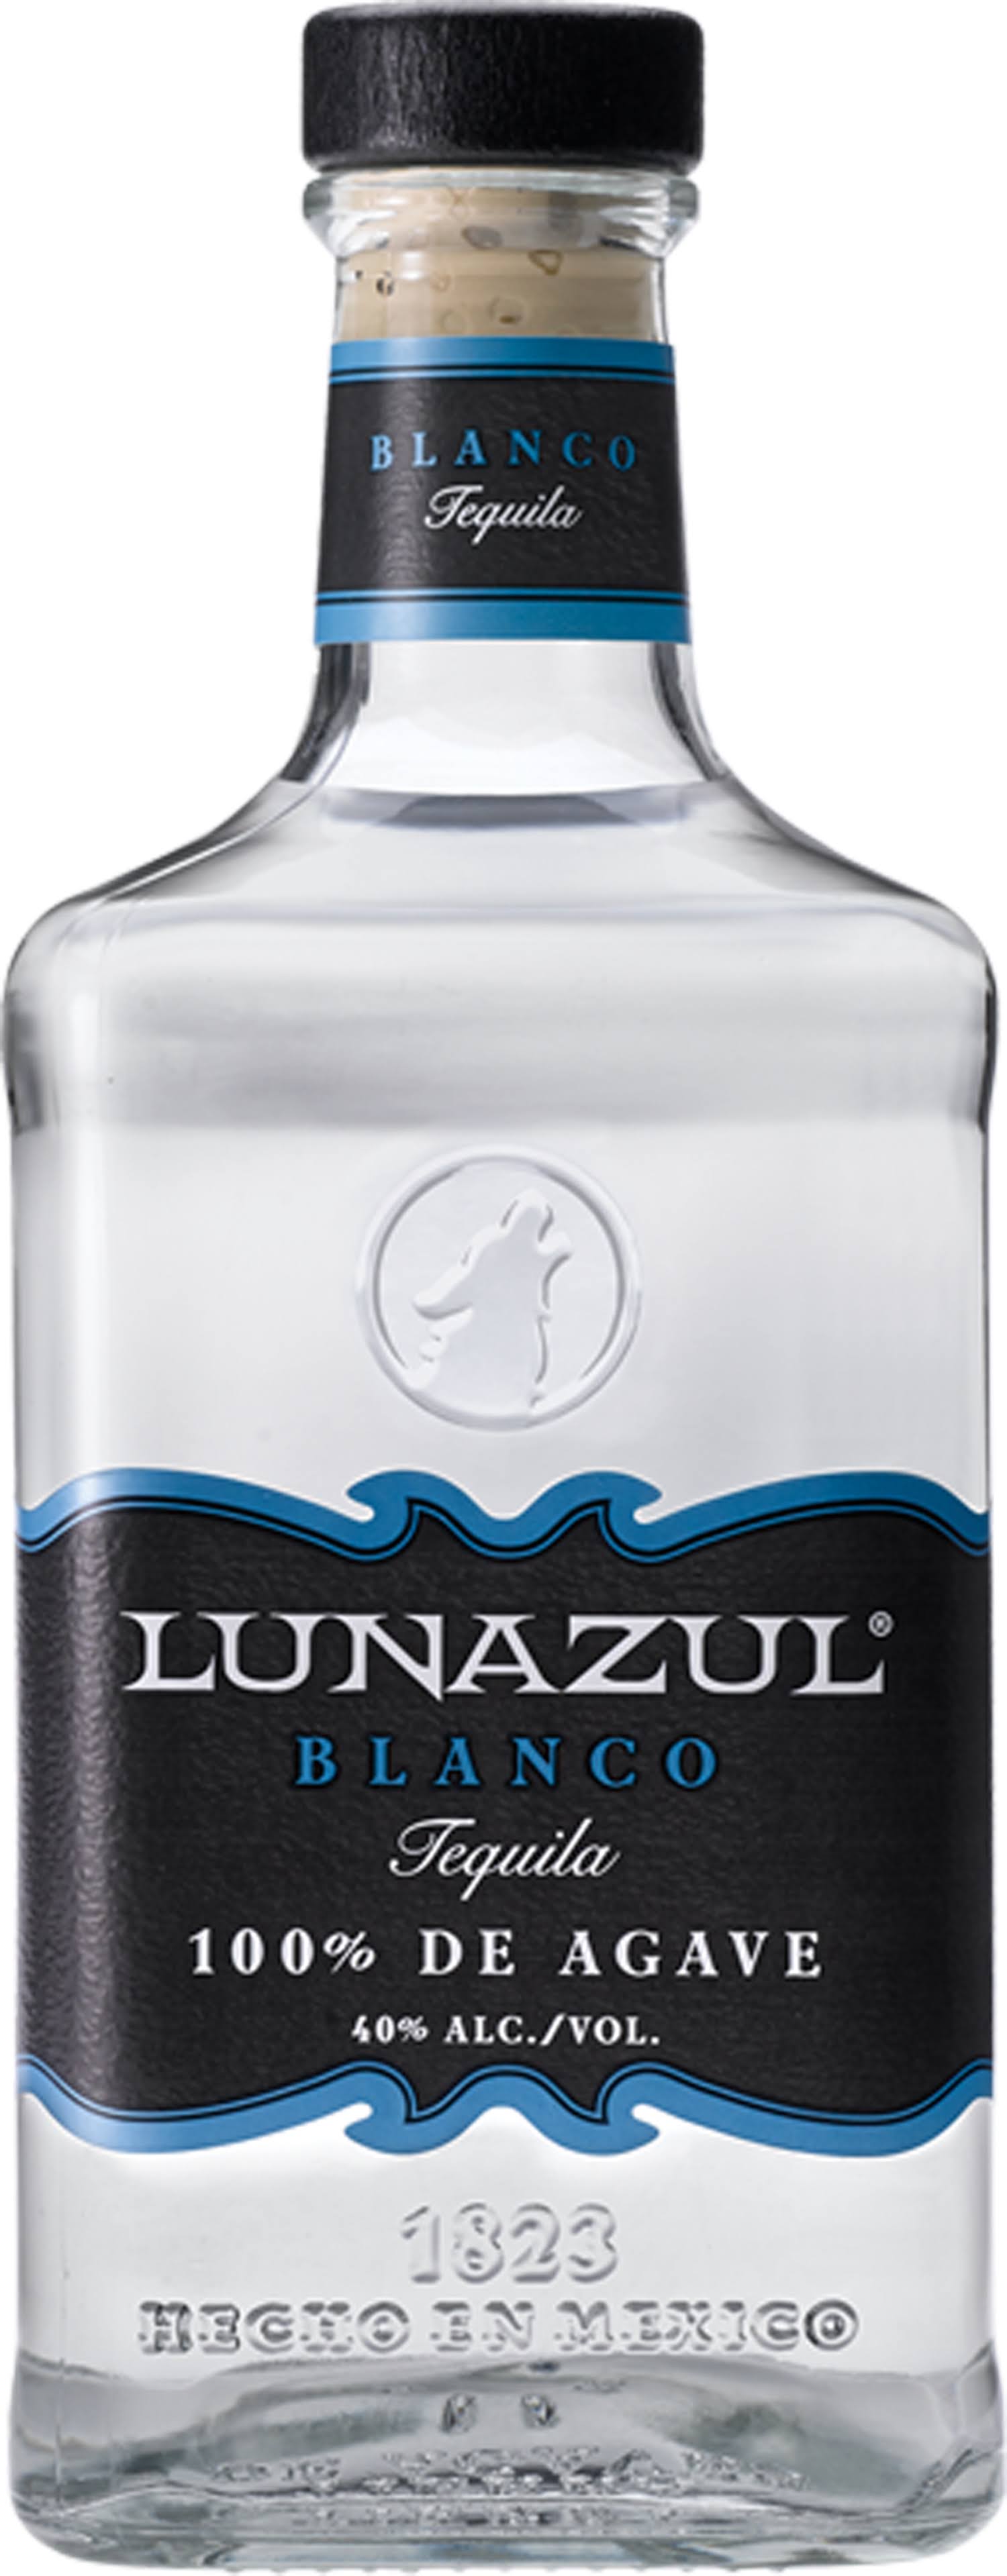 Lunazul Blanco Tequila - 750ml